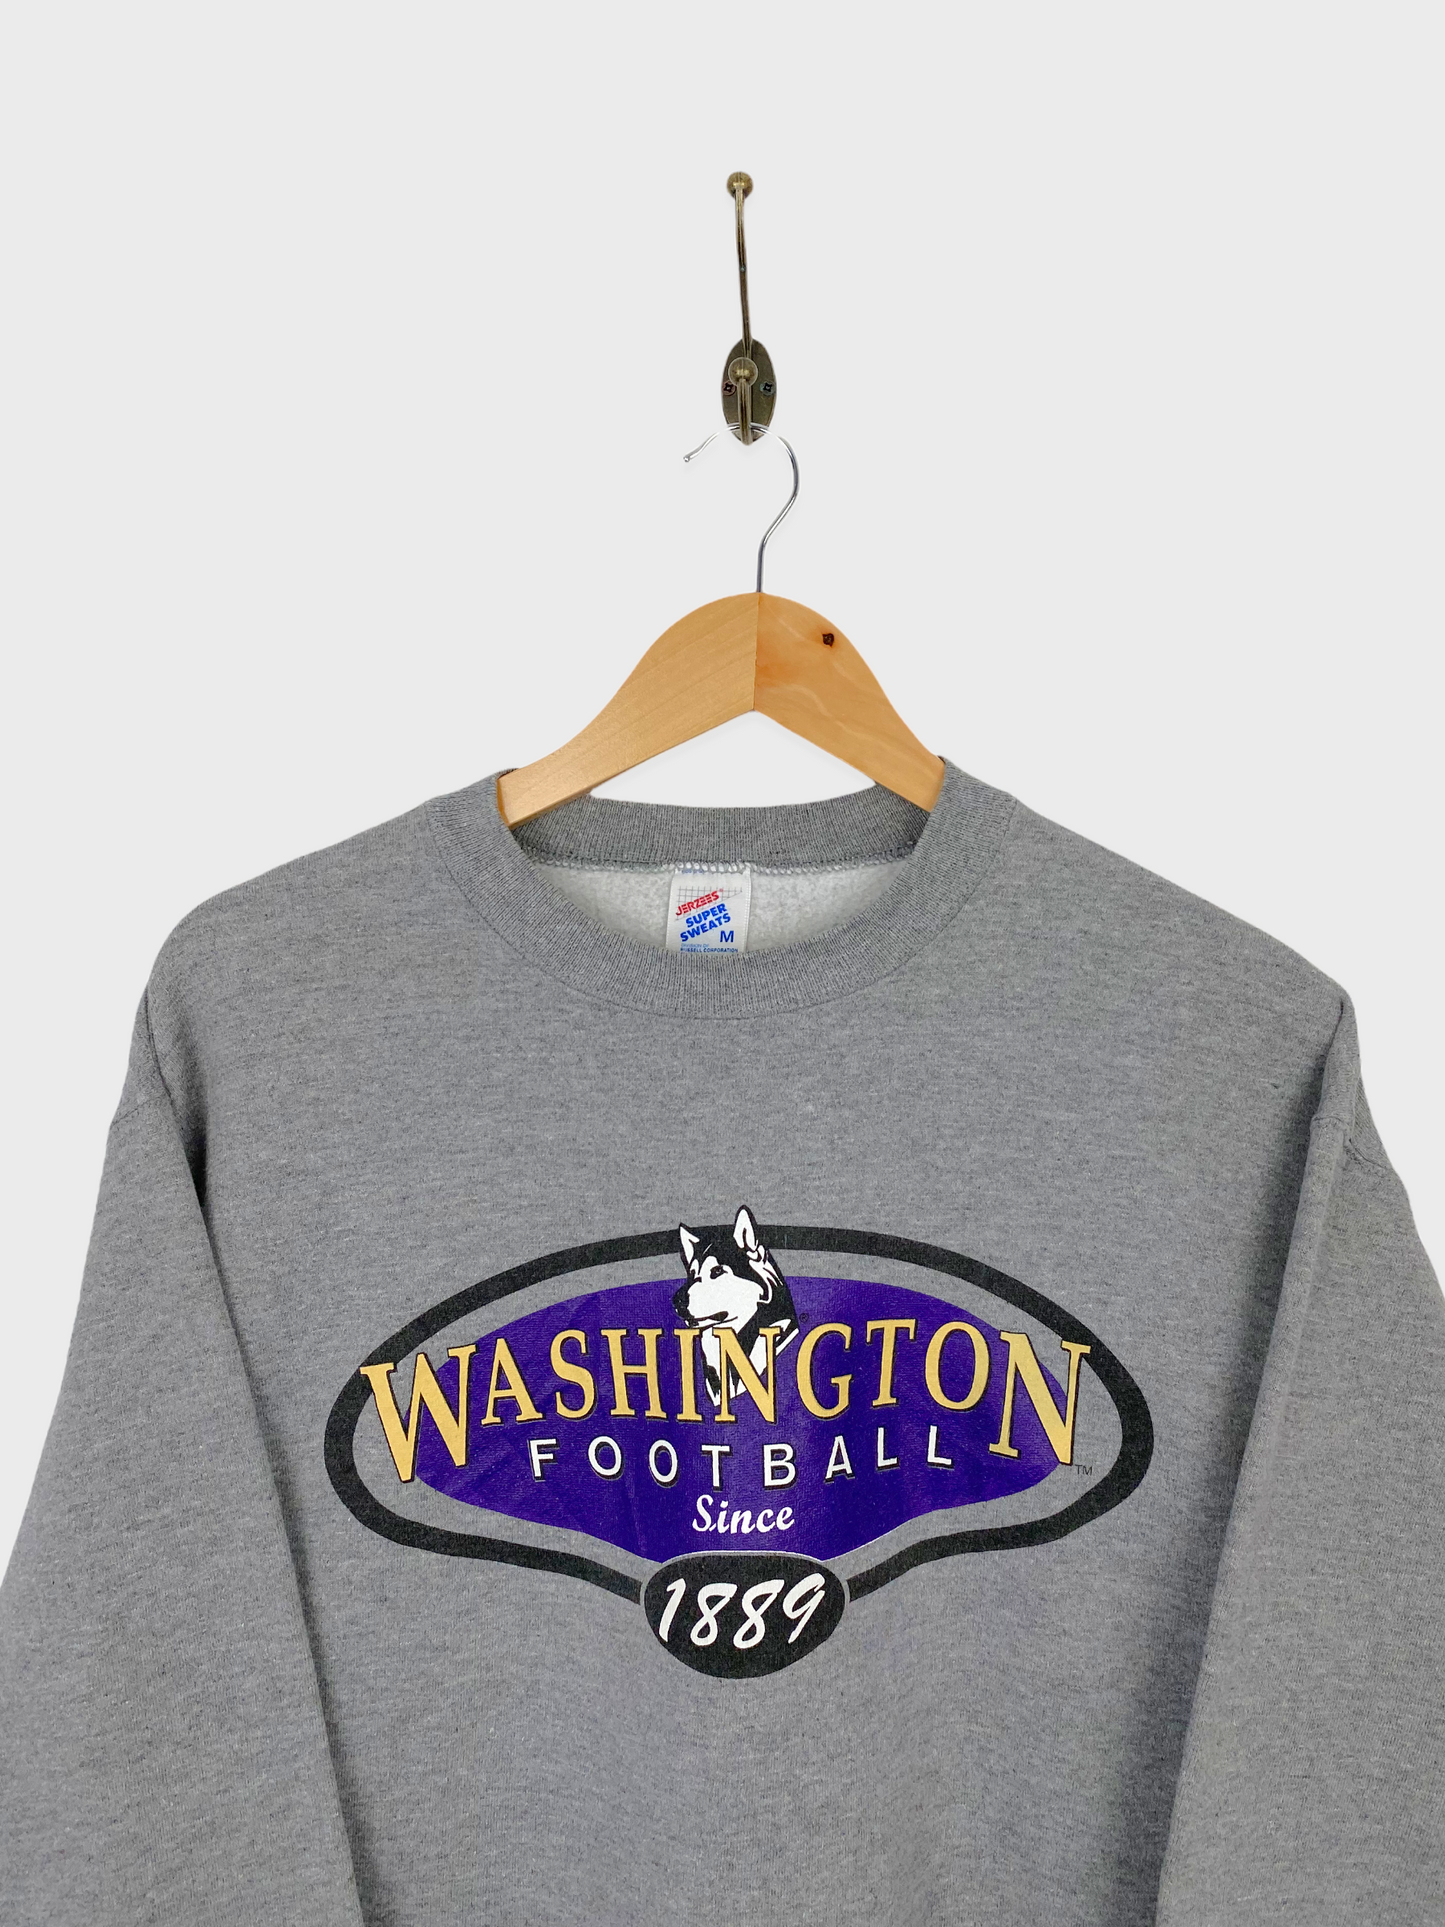 90's Huskies Football USA Made Vintage Sweatshirt Size 8-10